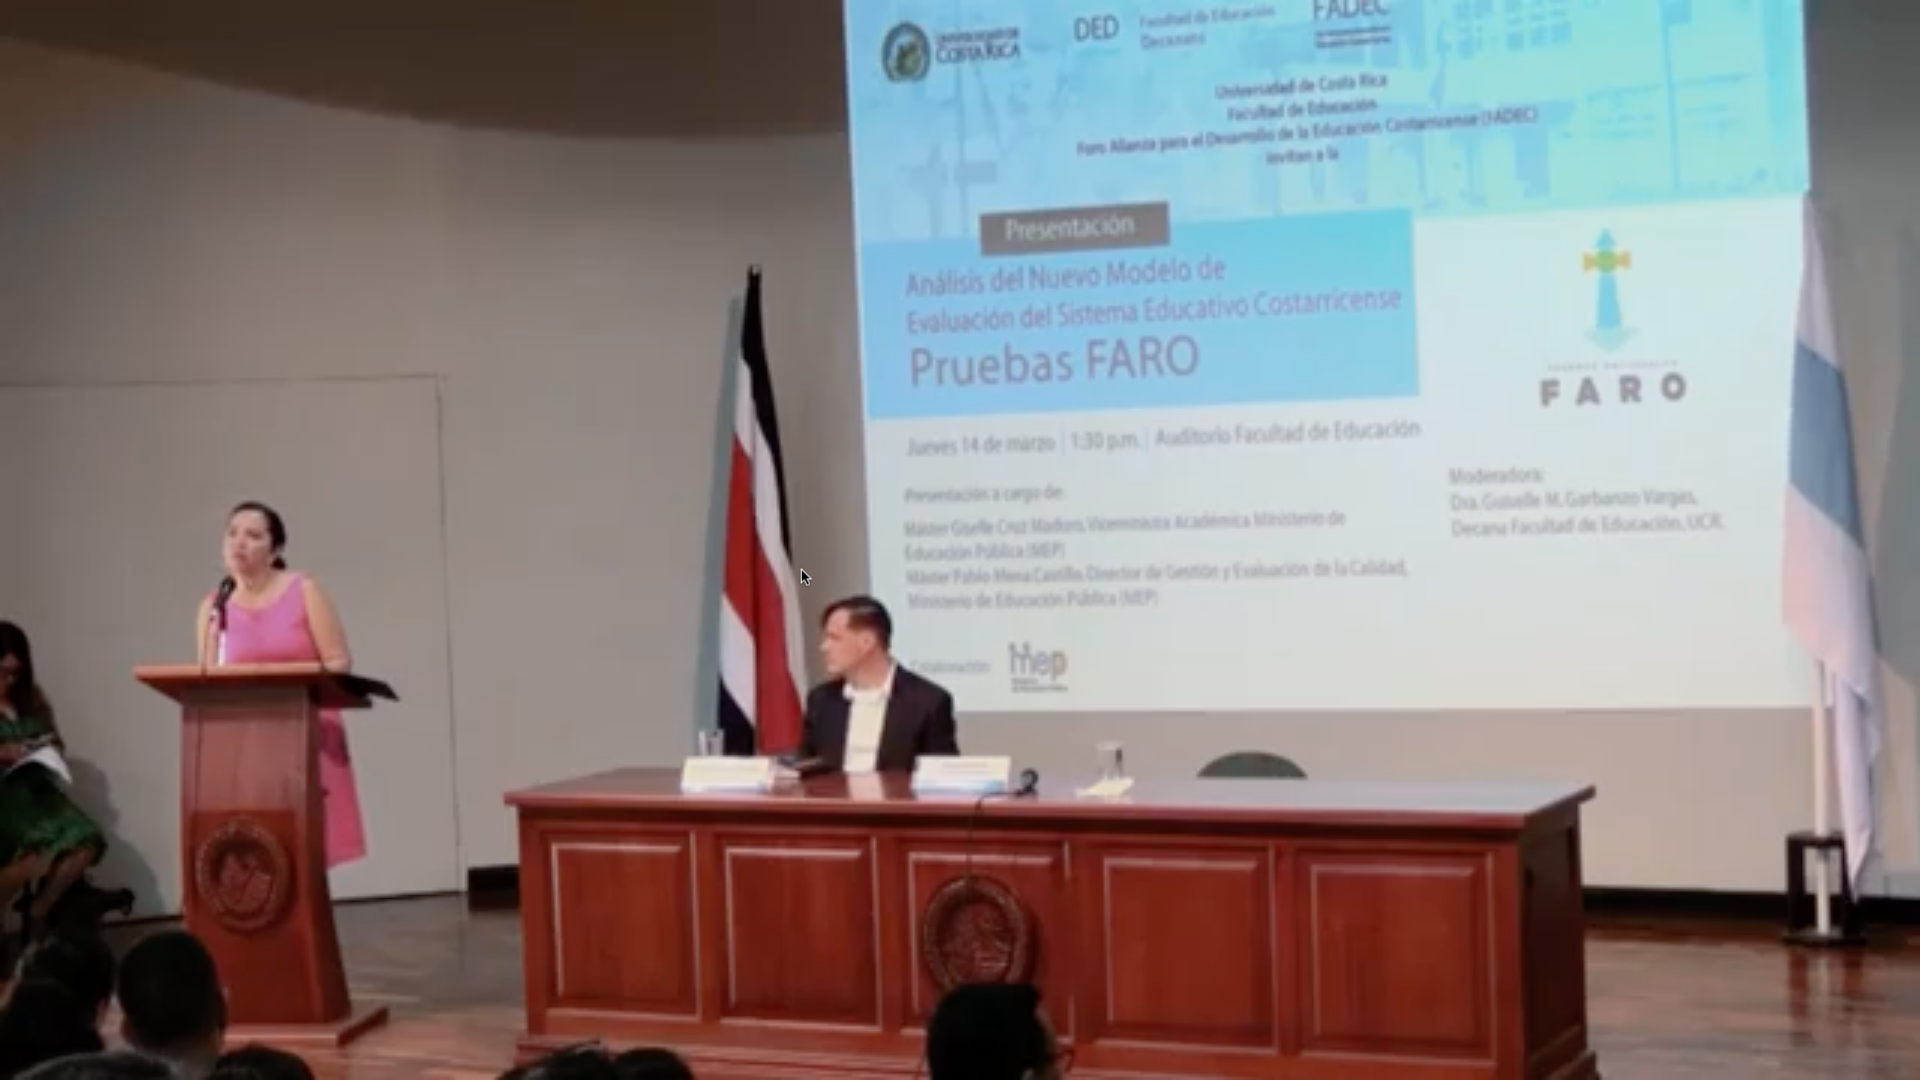 Disponible video de la Presentación del Nuevo Modelo de Evaluación del Sistema Educativo Costarricense Pruebas FARO